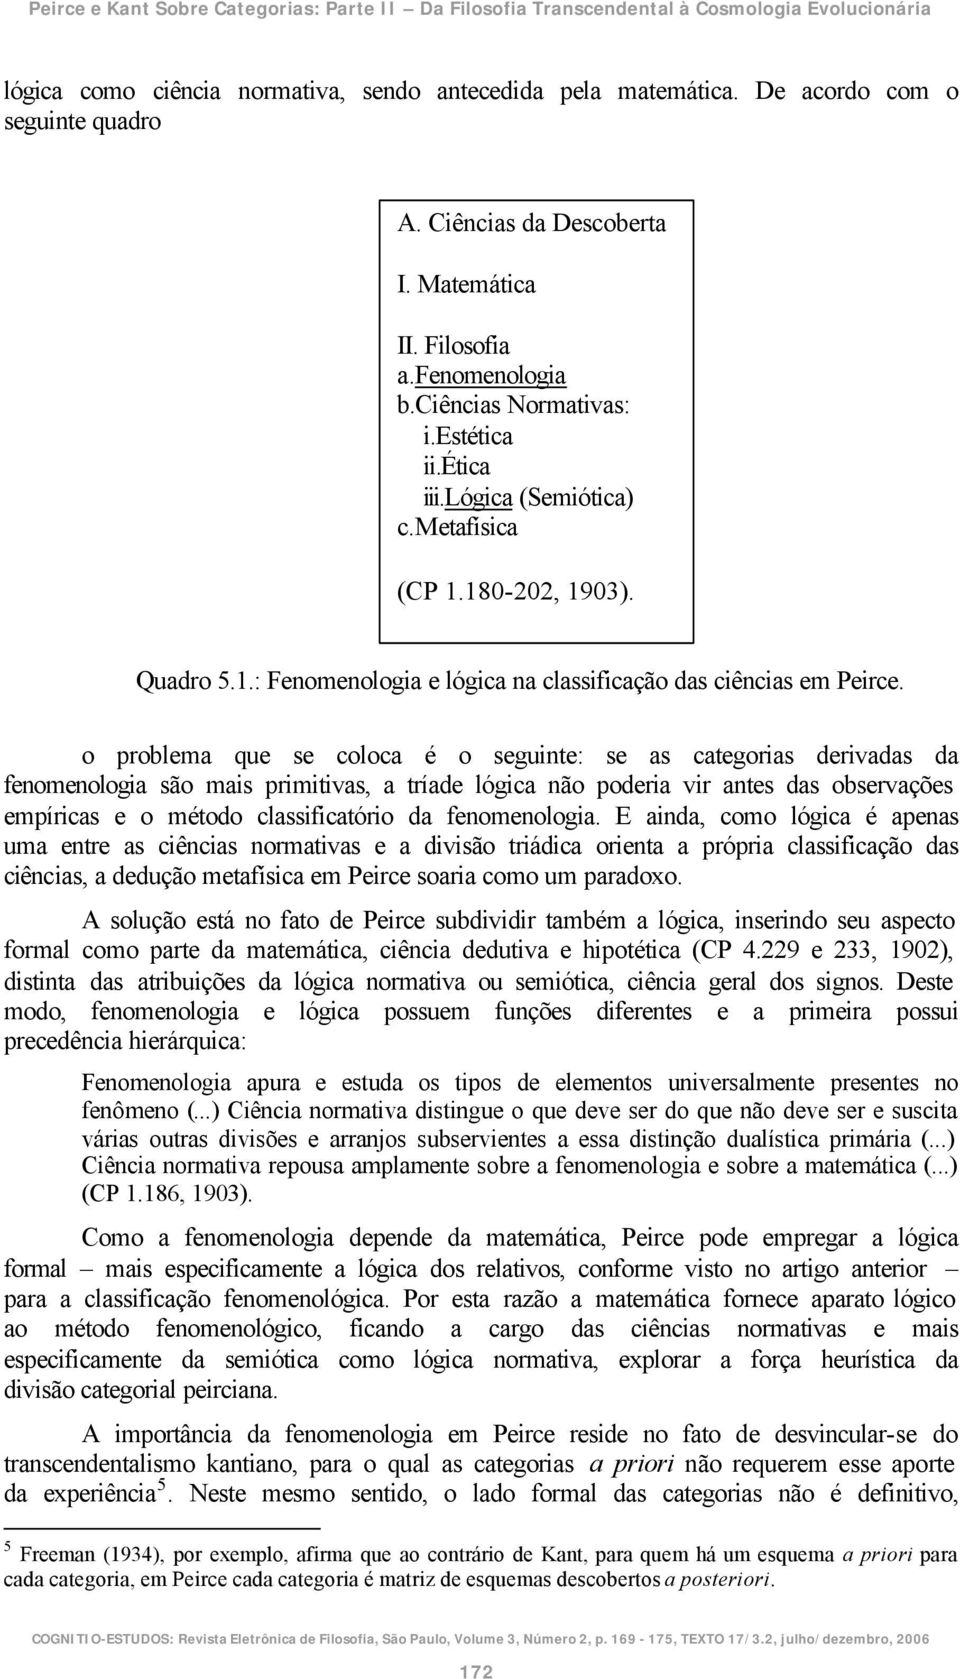 180-202, 1903). Quadro 5.1.: Fenomenologia e lógica na classificação das ciências em Peirce.